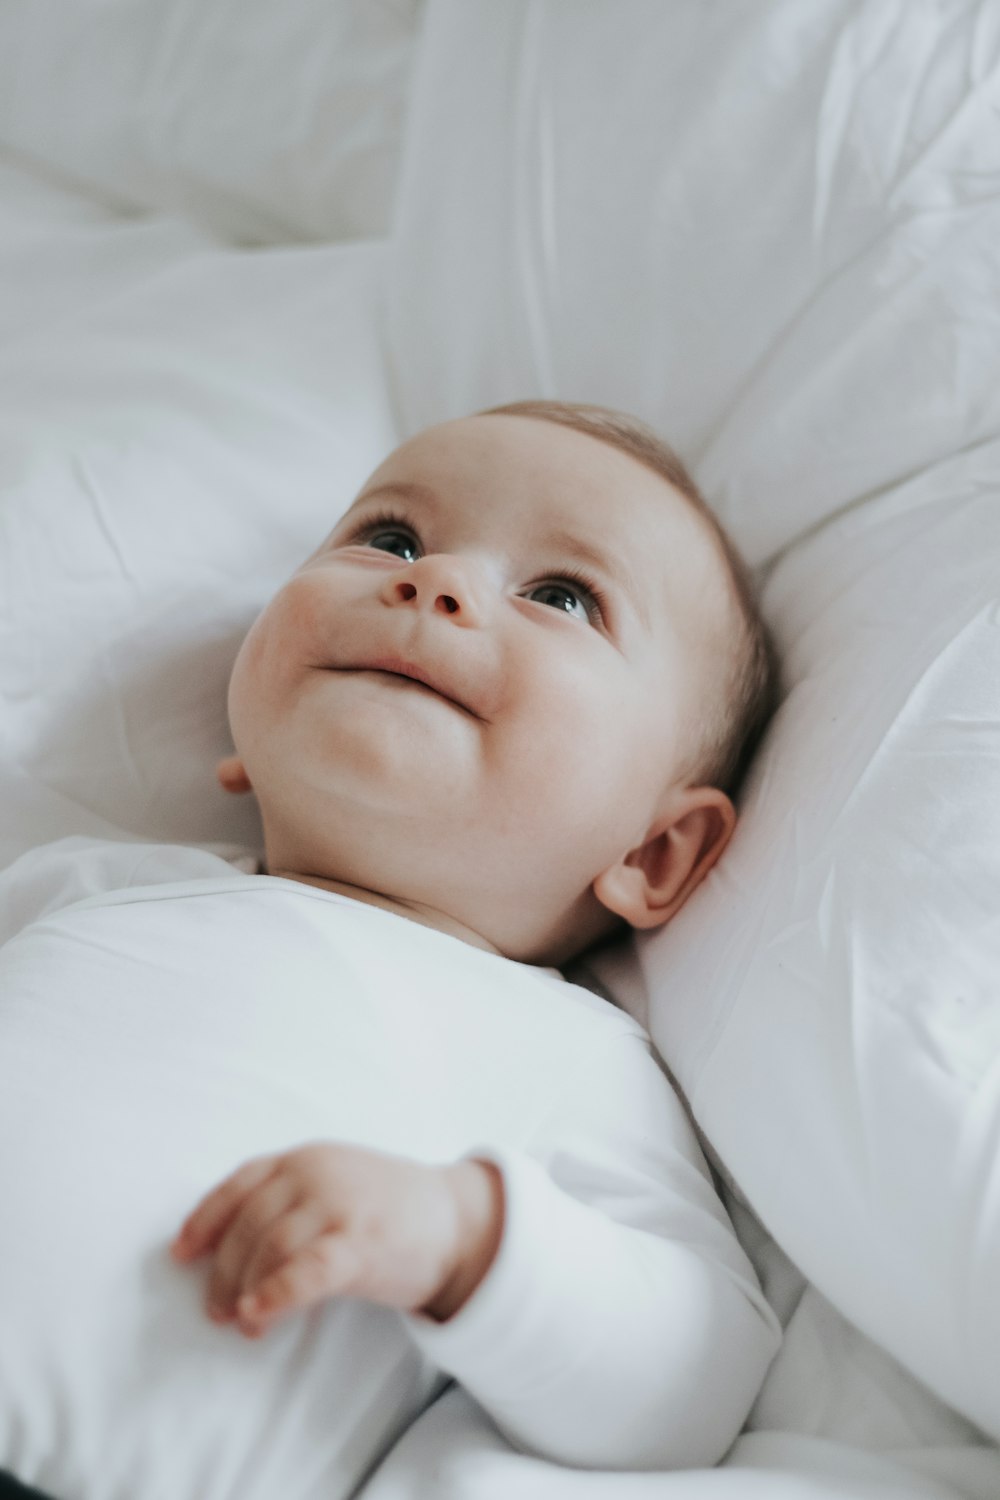 흰 시트가있는 침대에 누워있는 아기